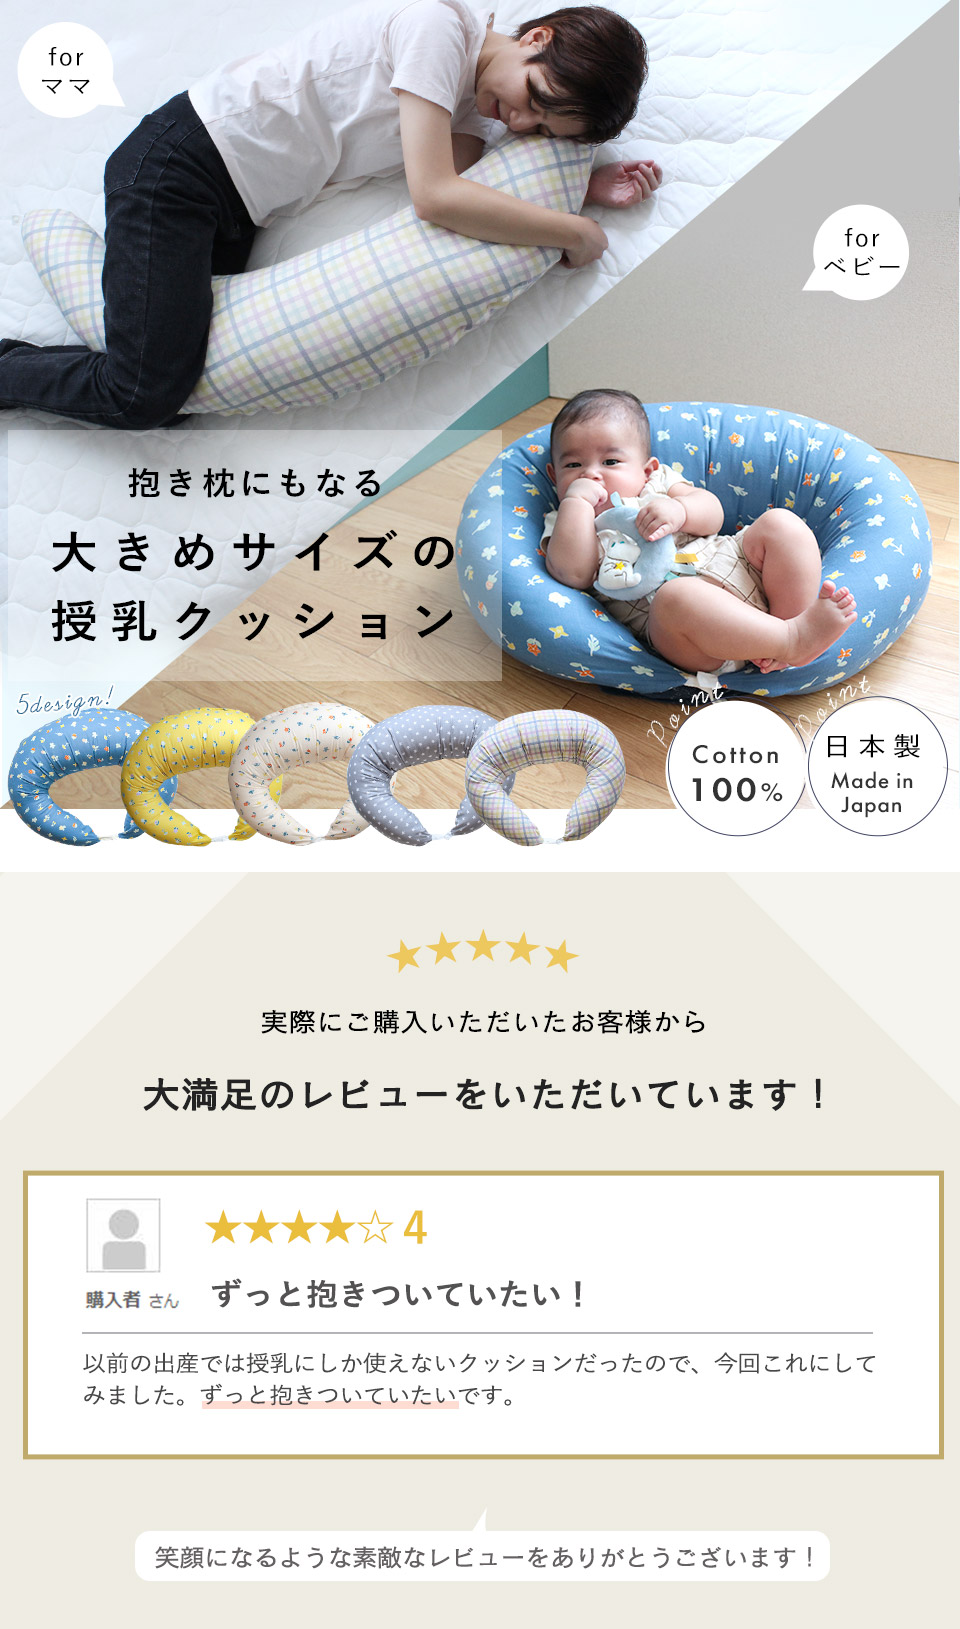 授乳クッション 授乳枕 日本製